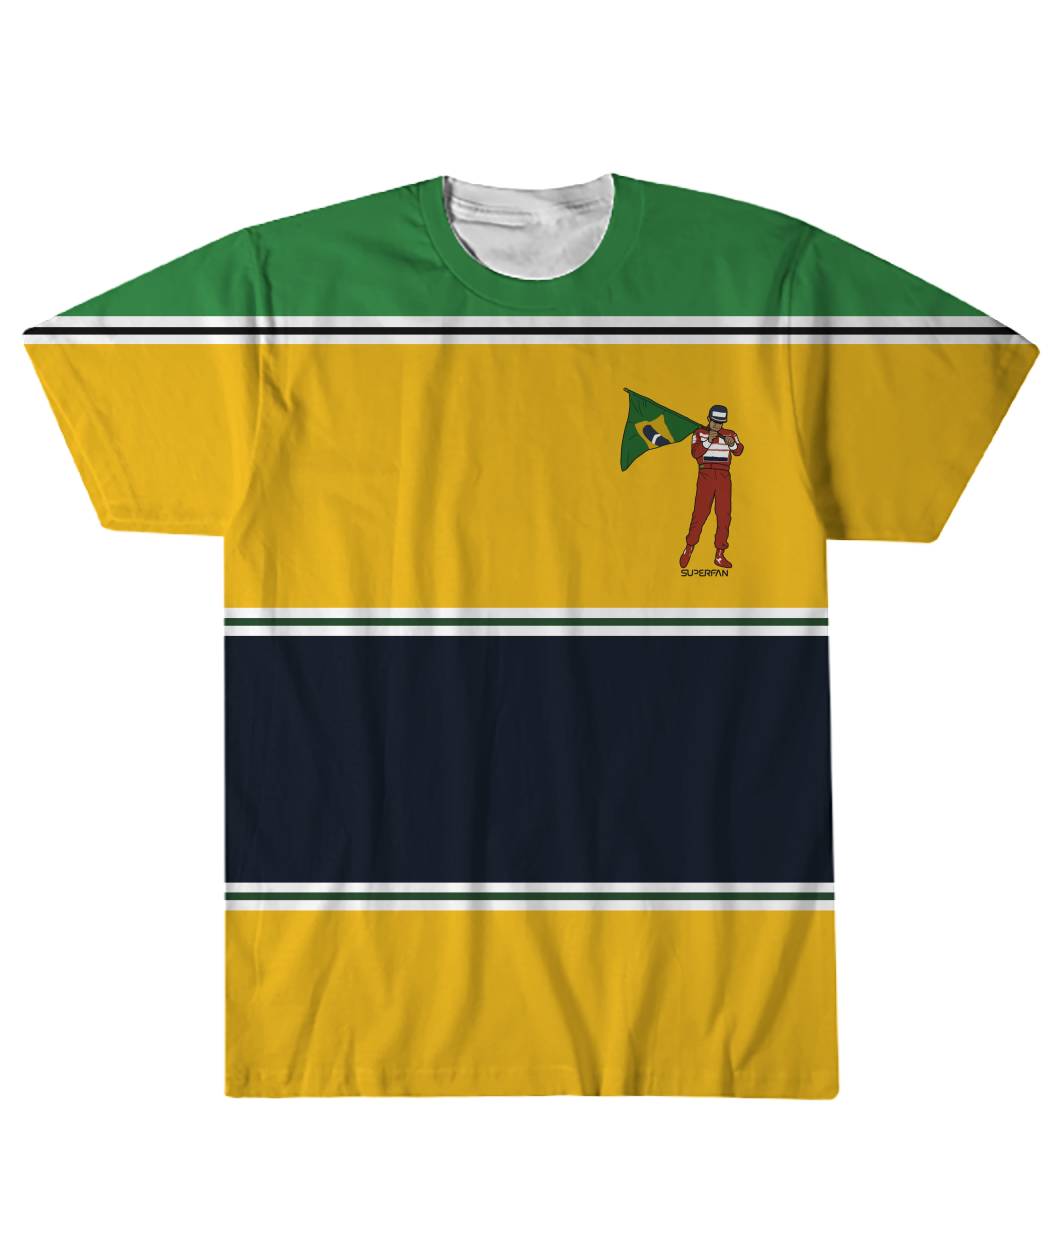 Senna T-Shirt